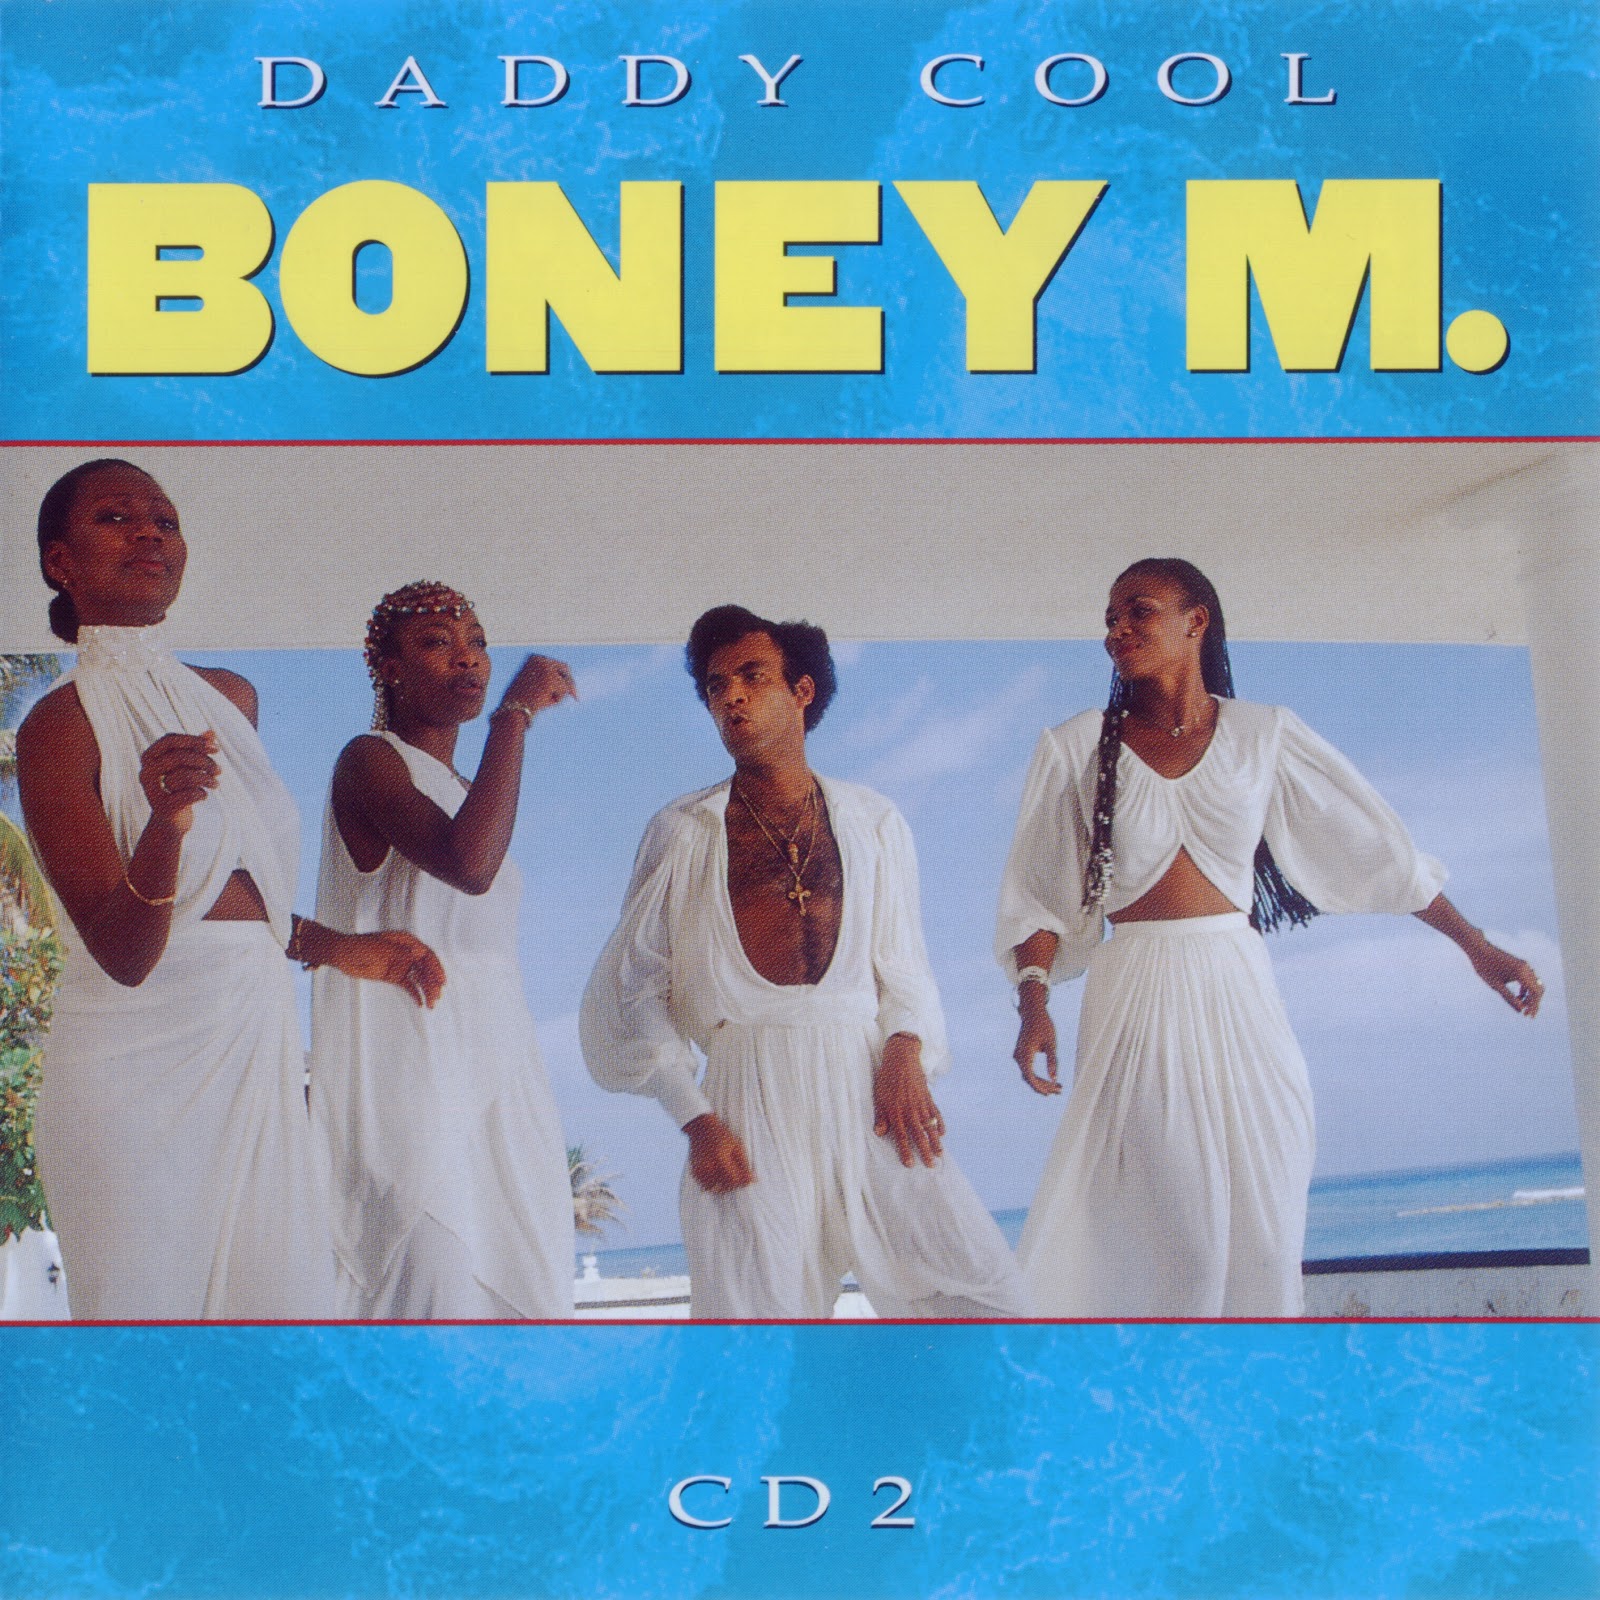 Boney m dance. Boney m 1977. Группа Boney m. альбомы. Бони м дискография. Boney m Sunny винил 1976.